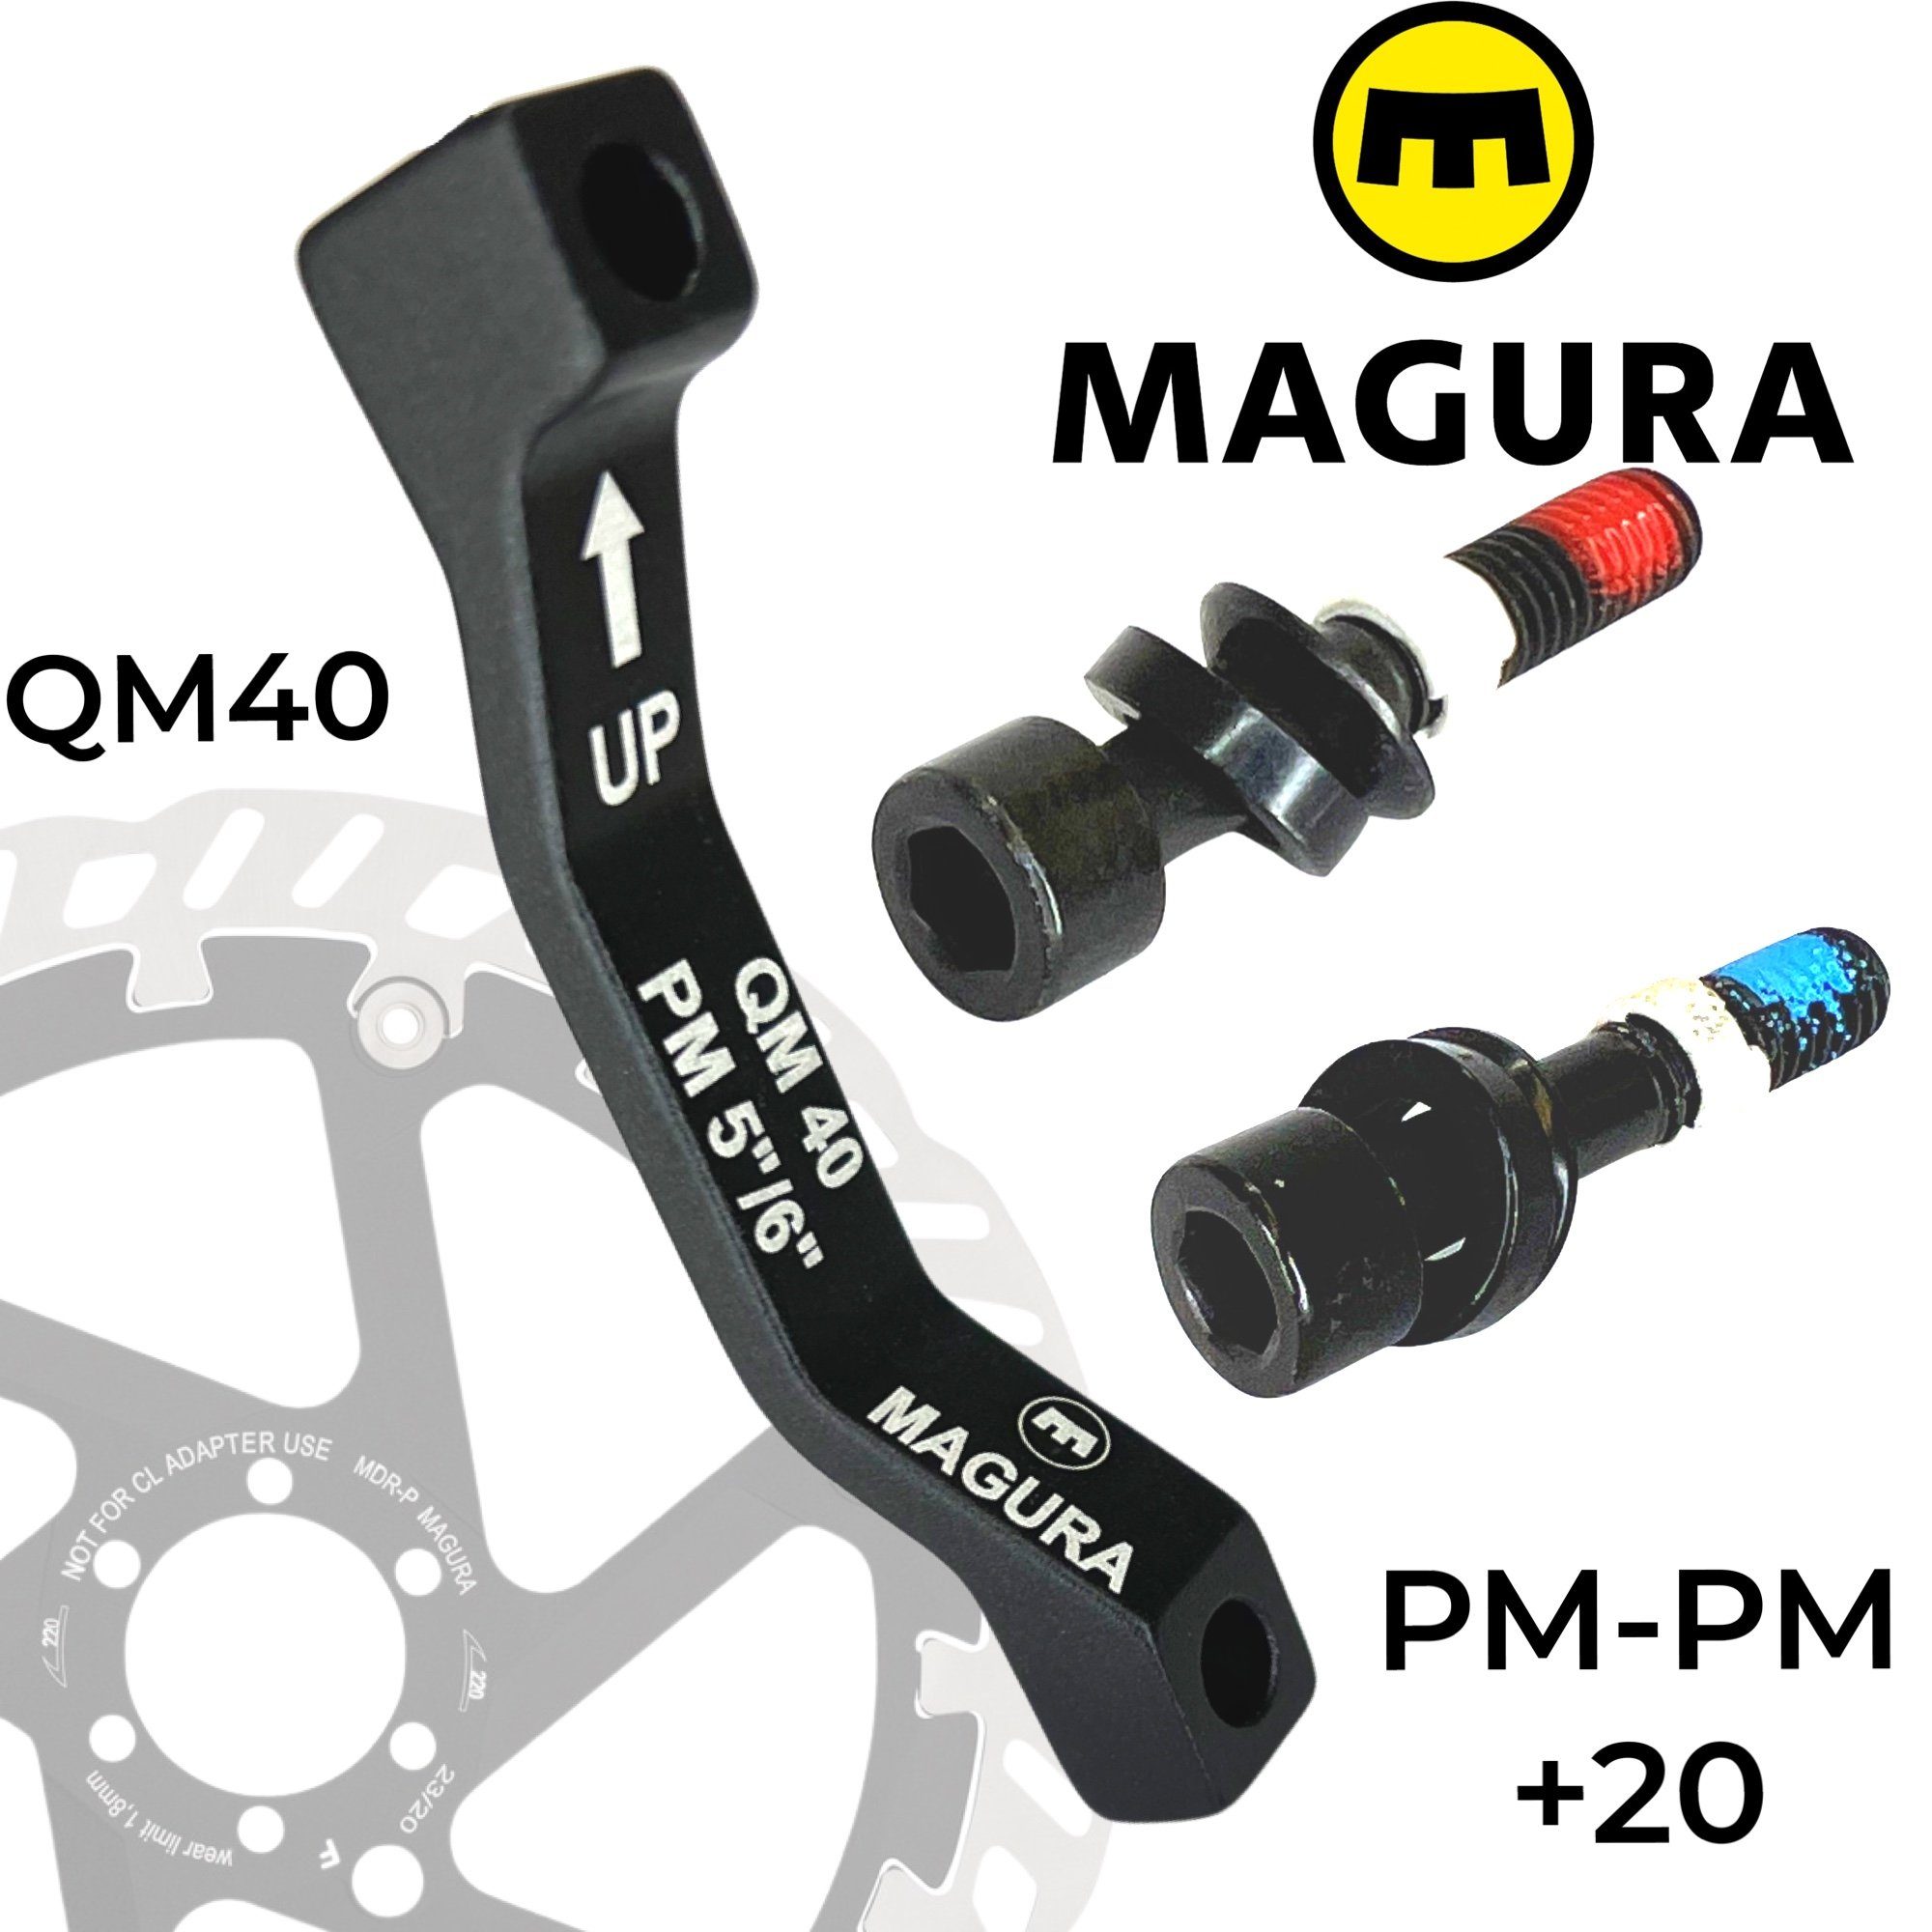 Magura Scheibenbremse Magura Bremsscheiben PM PM 160-180 / 140-160 +20mm QM40, Adapter